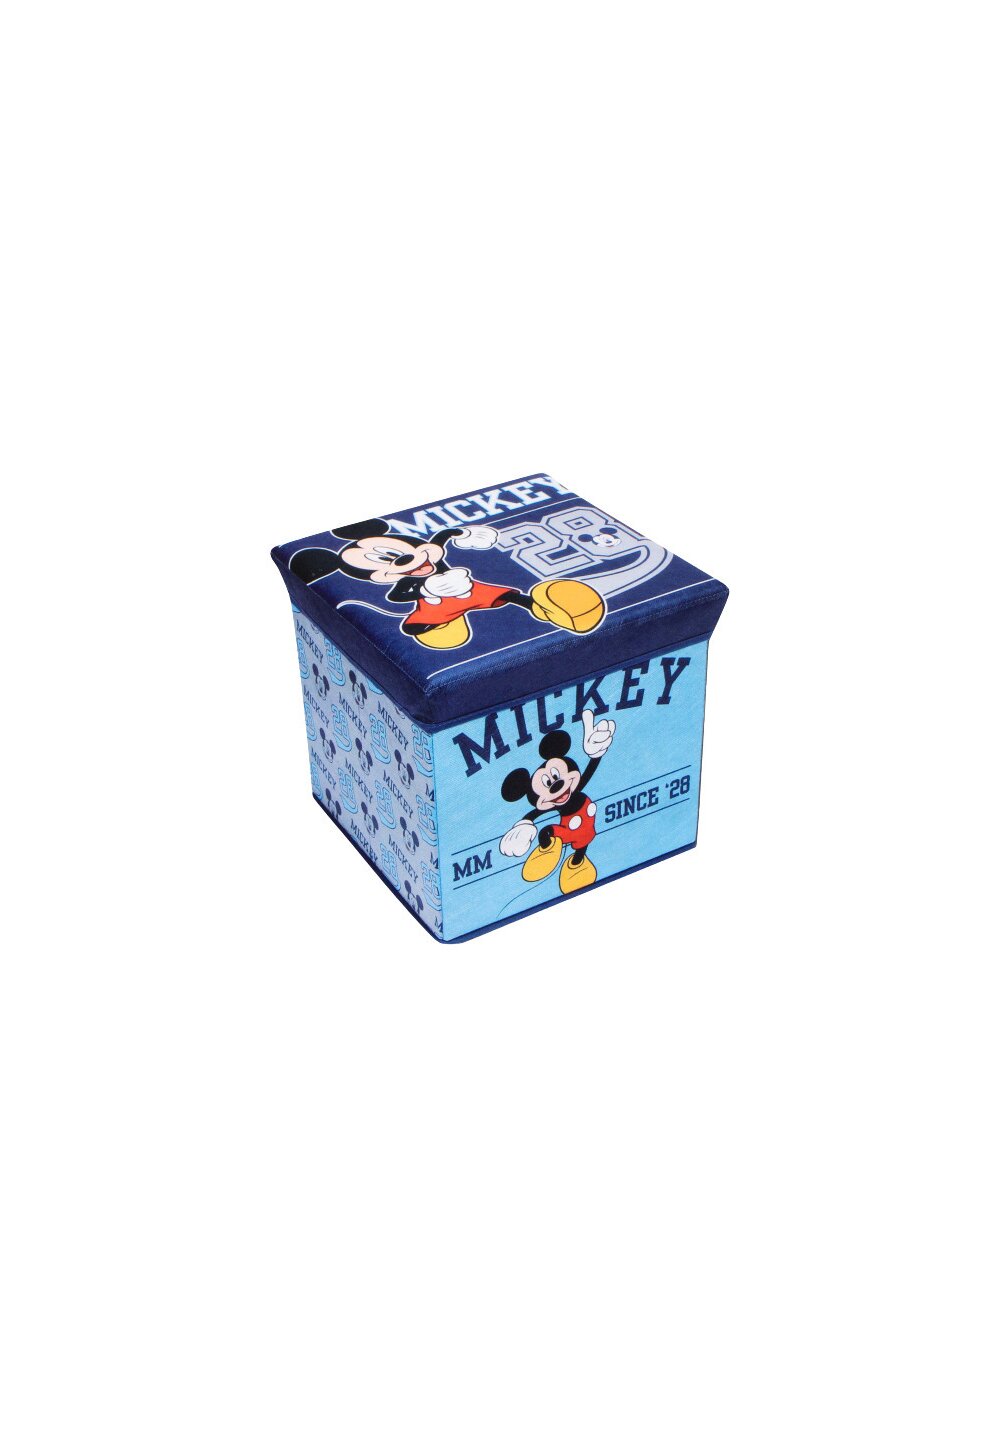 Cutie depozitare, Mickey Mouse, Since 28, bluemarin DISNEY imagine noua